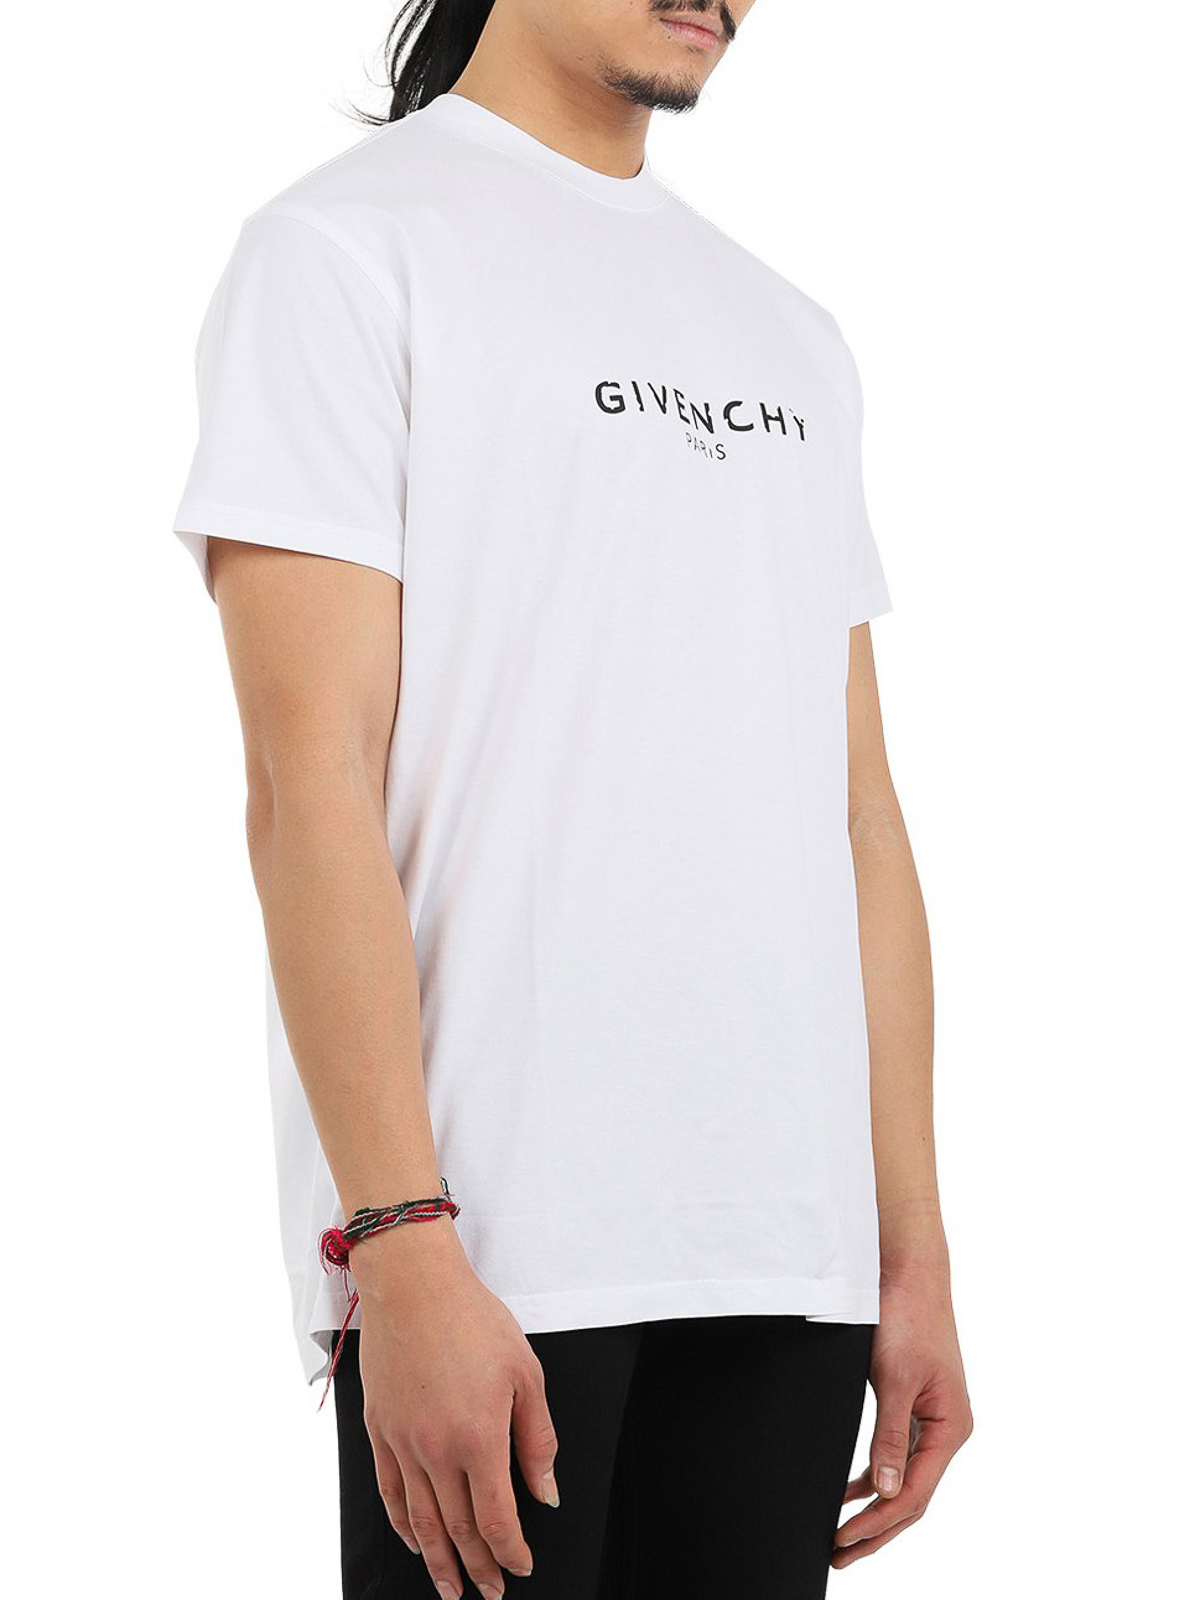 givenchy t shirts